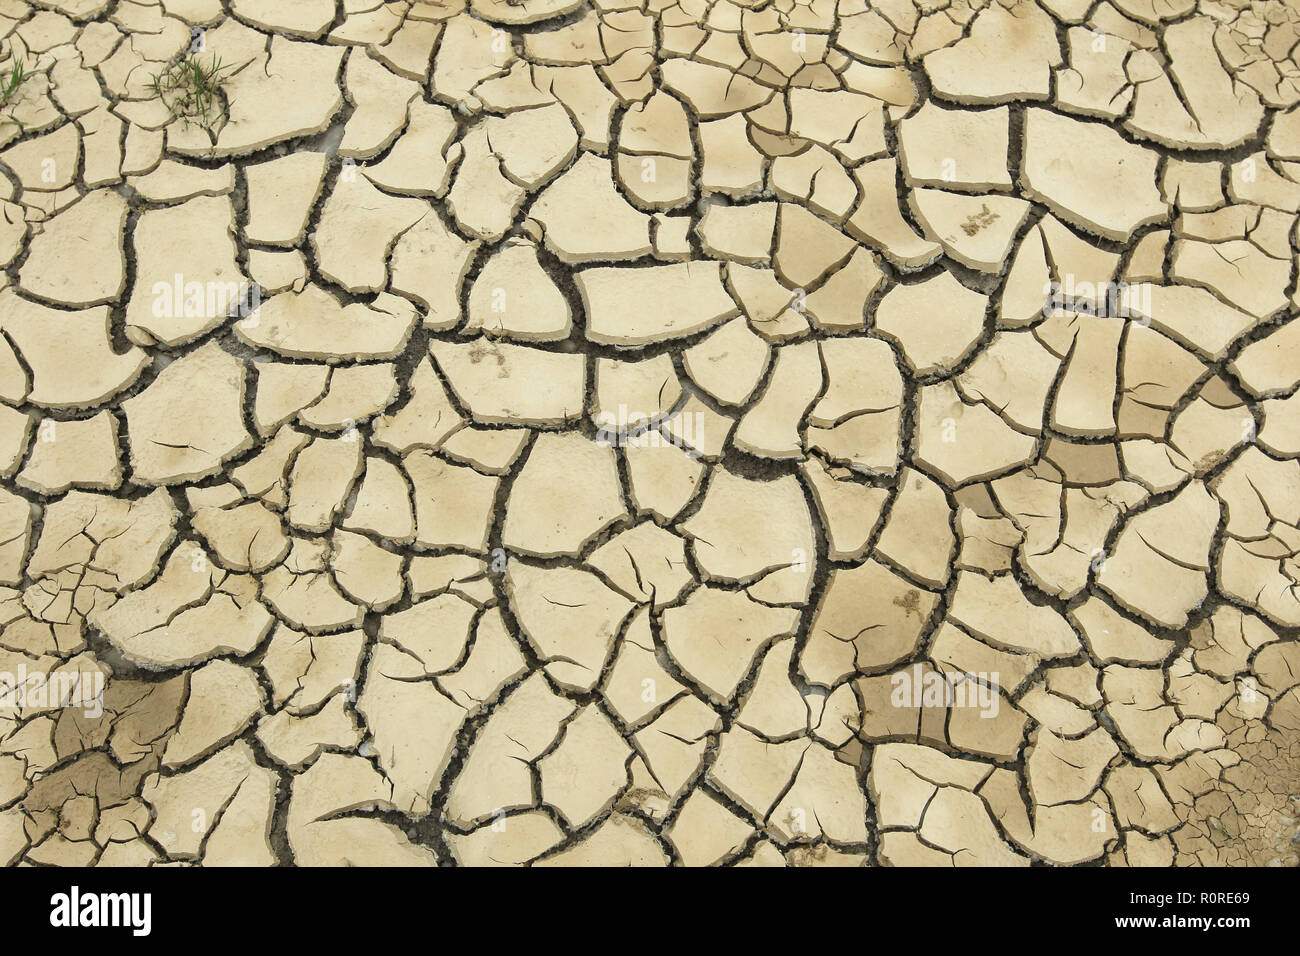 Le sol argileux a éclaté en raison de la sécheresse prolongée, image de fond, Allemagne Banque D'Images